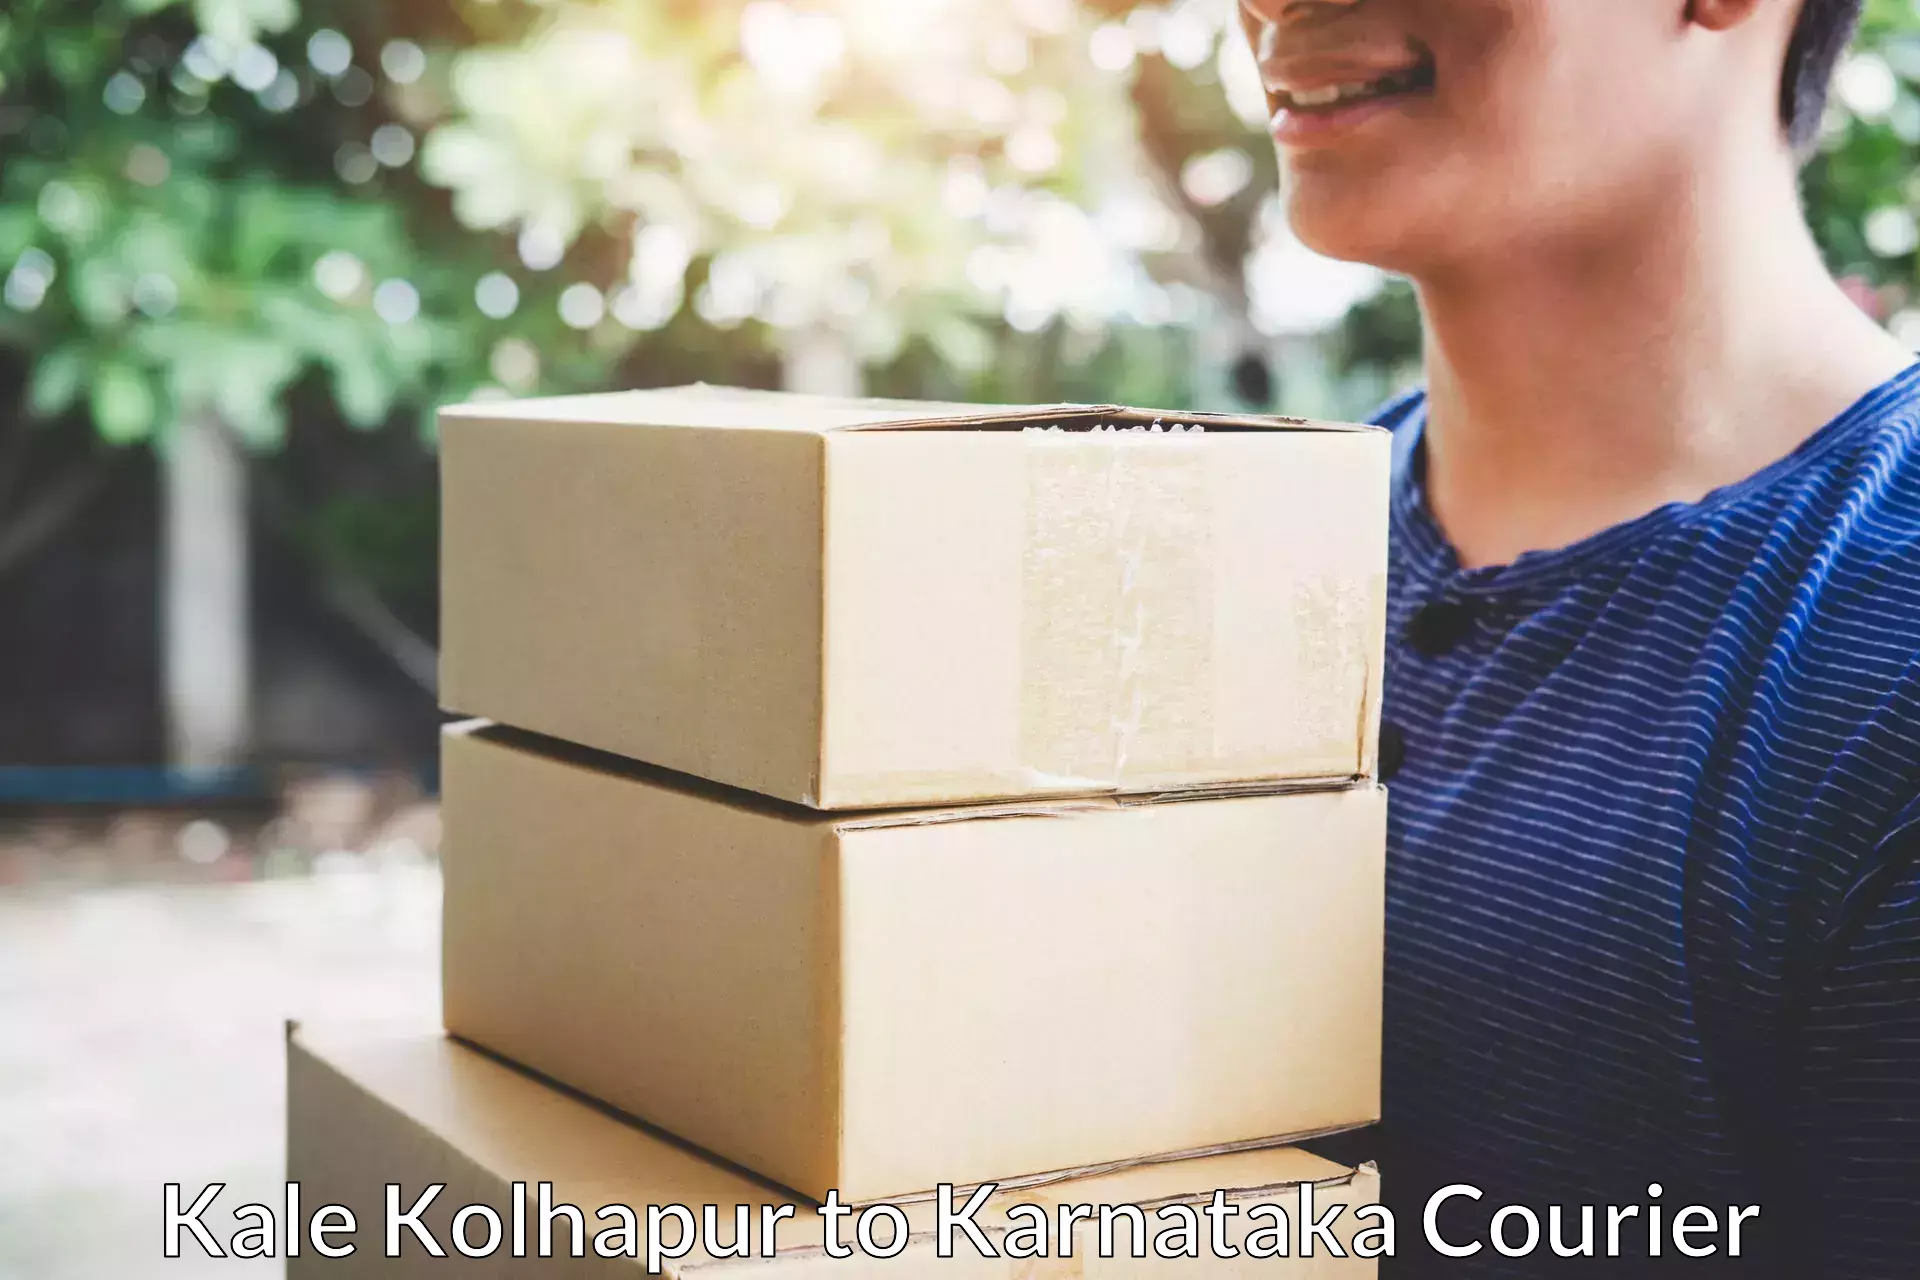 Efficient relocation services Kale Kolhapur to Mundgod